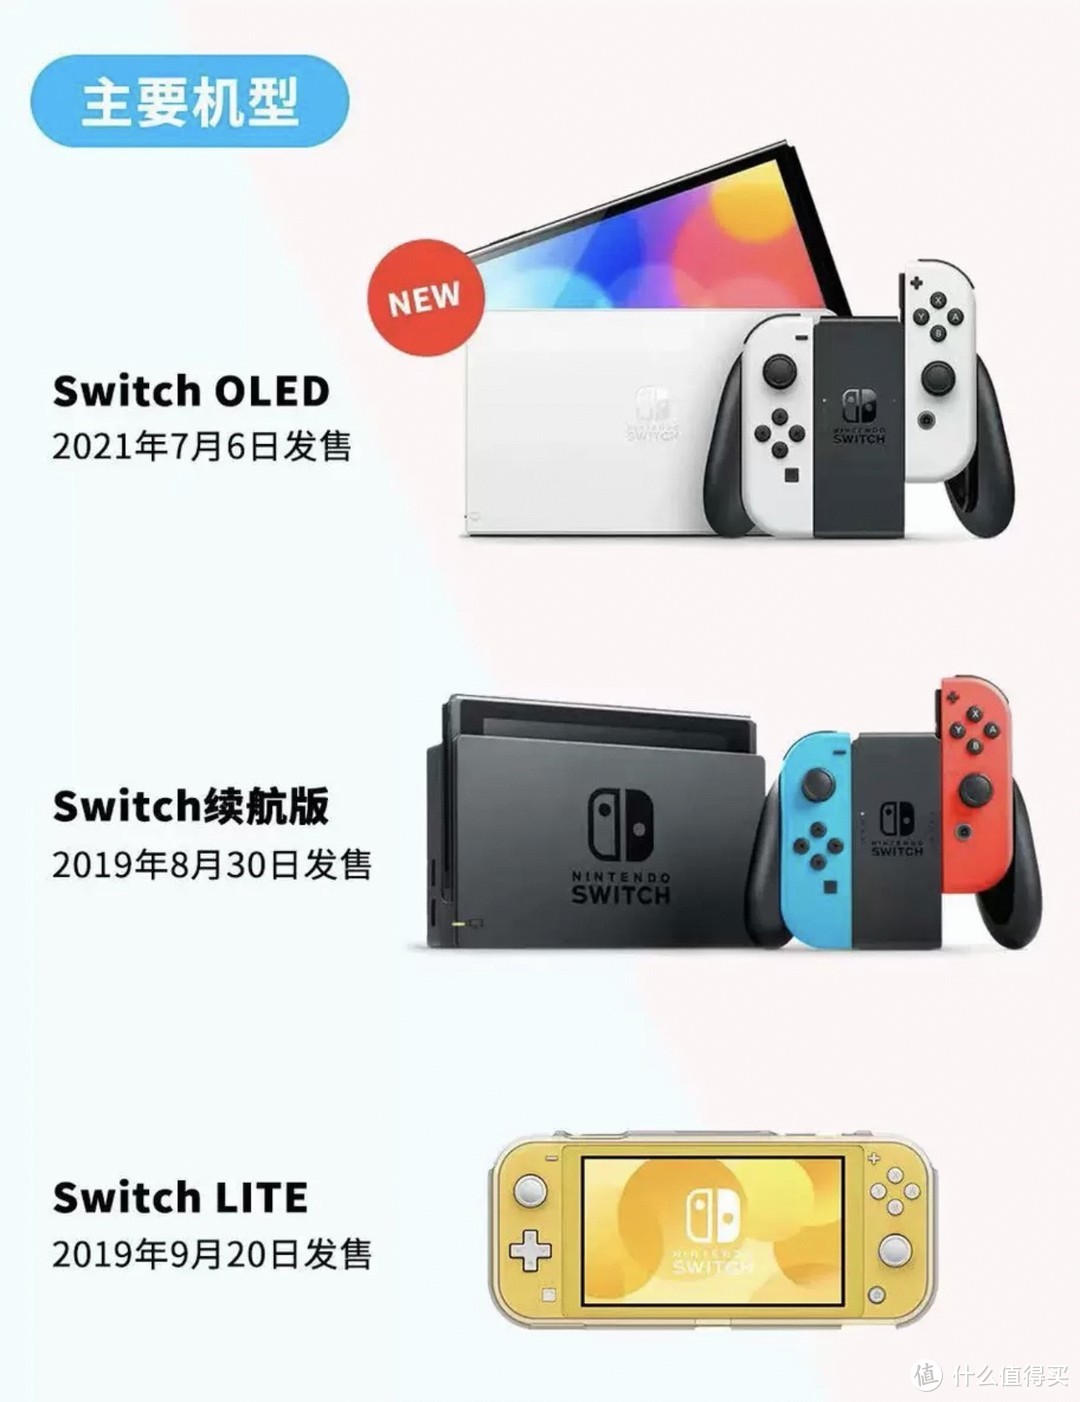 不知道买哪个版本的switch？给大家总结了不同型号的switch适合人群